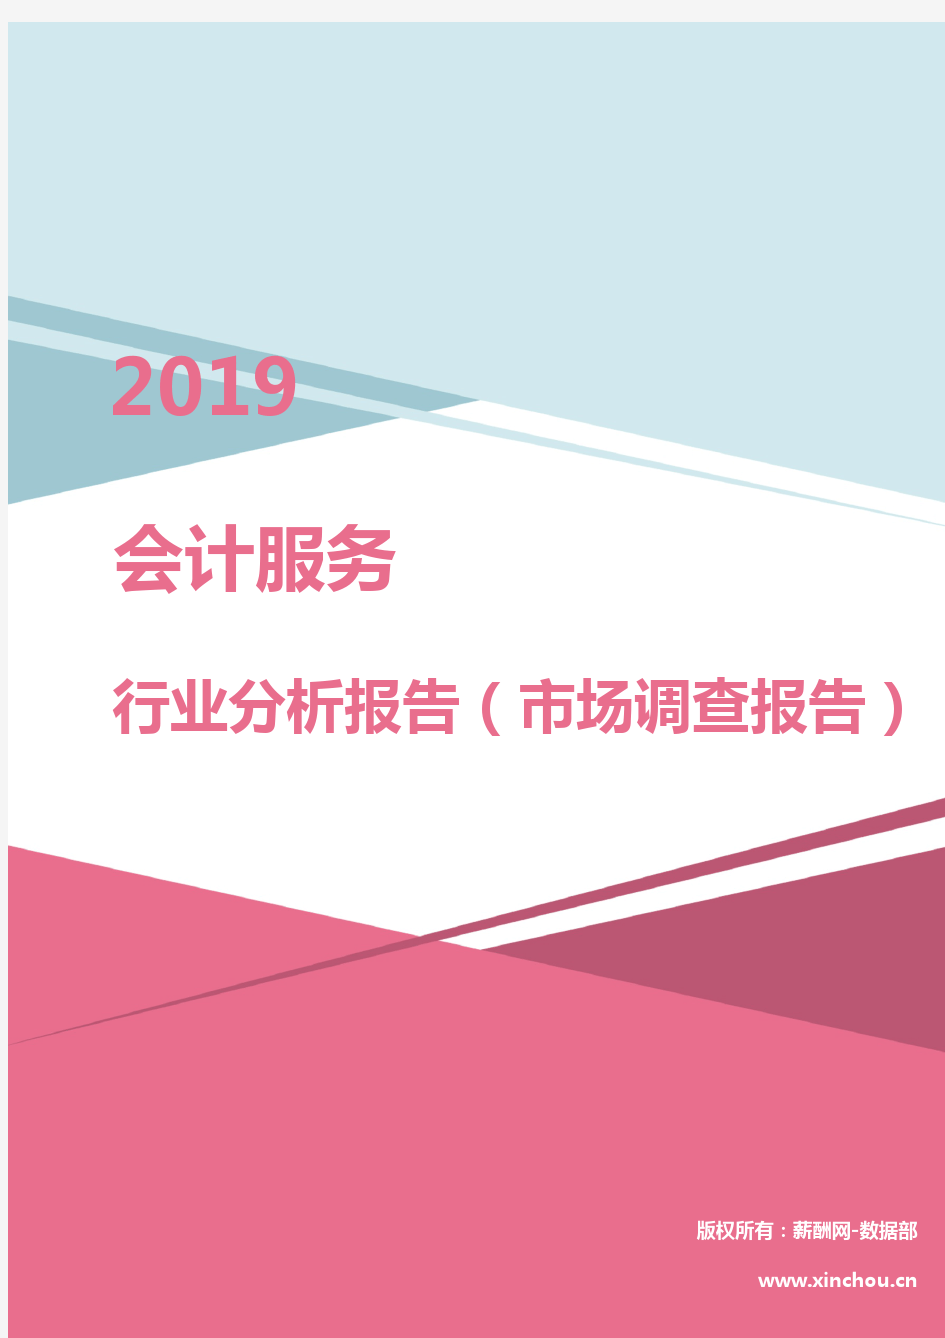 2019年会计服务行业分析报告(市场调查报告)